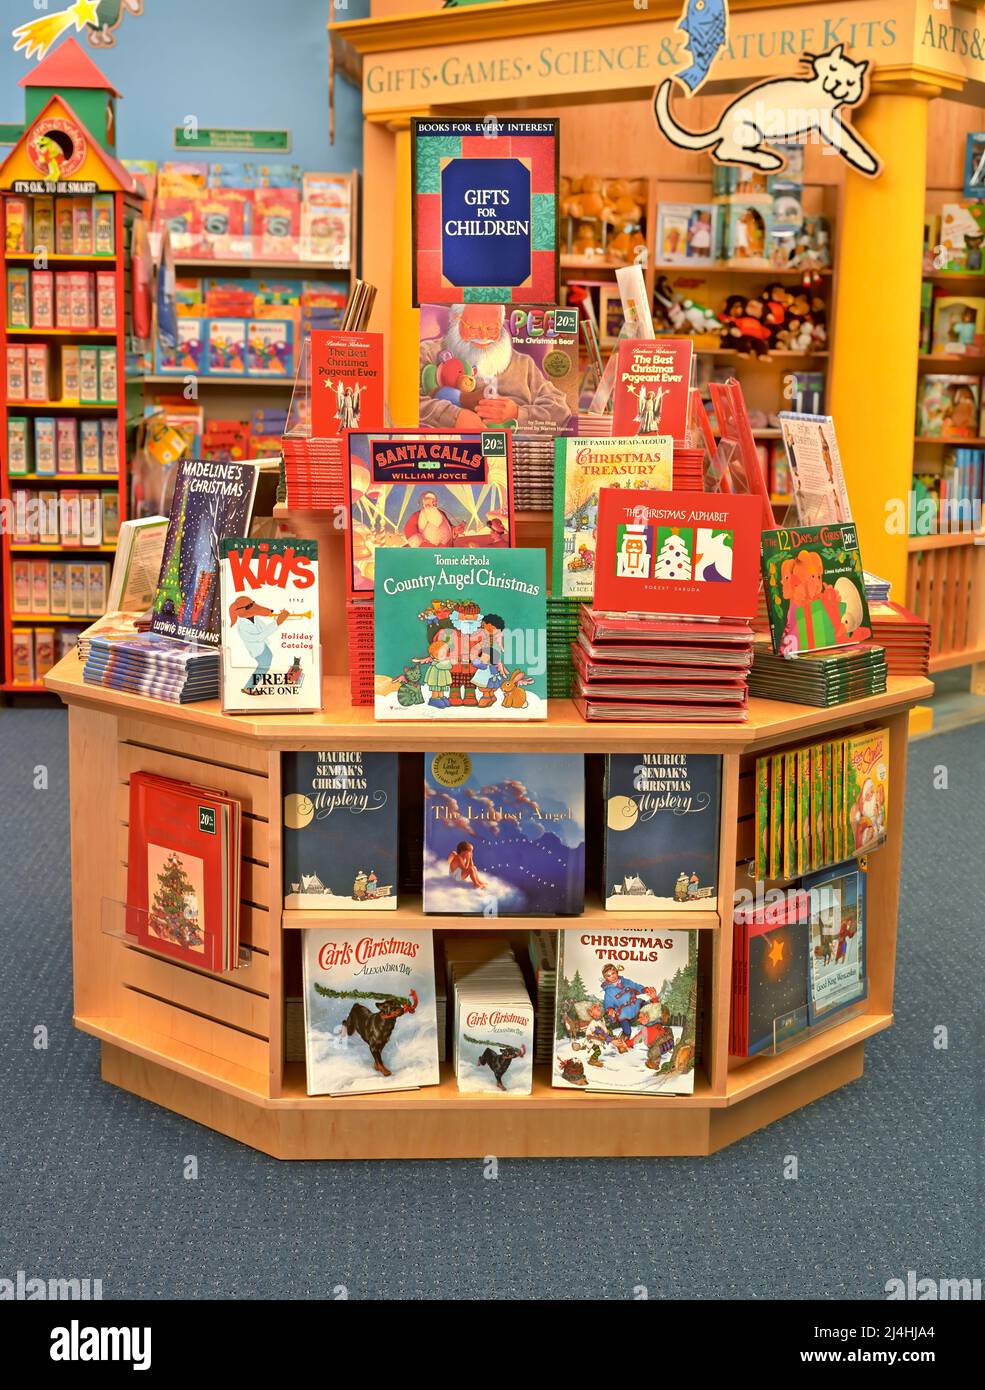 Barnes & Noble Children Books Stock Photo